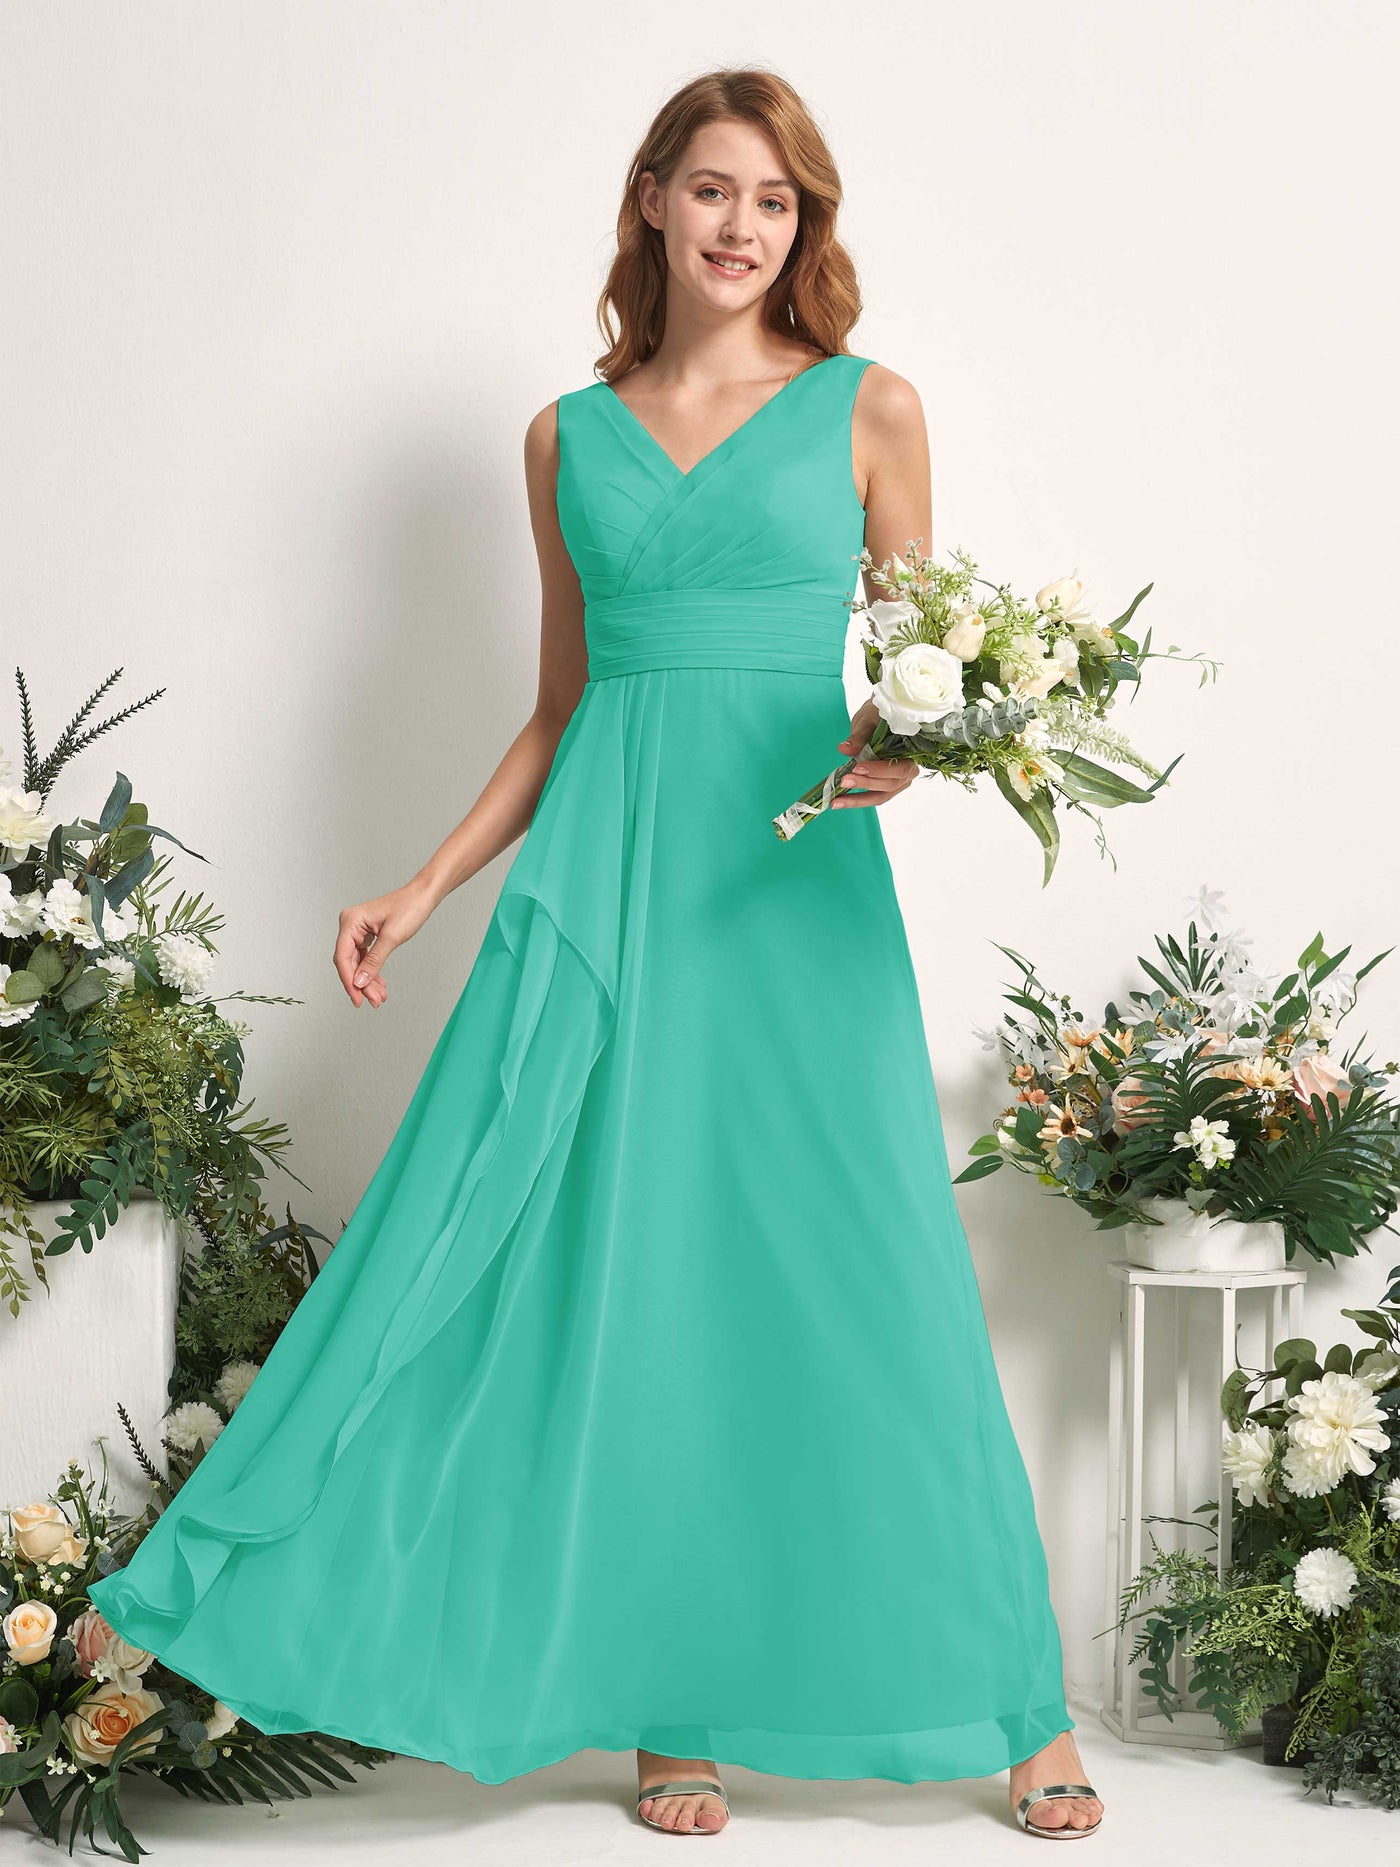 Bridesmaid Dress A-line Chiffon V-neck Full Length Sleeveless Wedding Party Dress - Tiffany (81227132)#color_tiffany